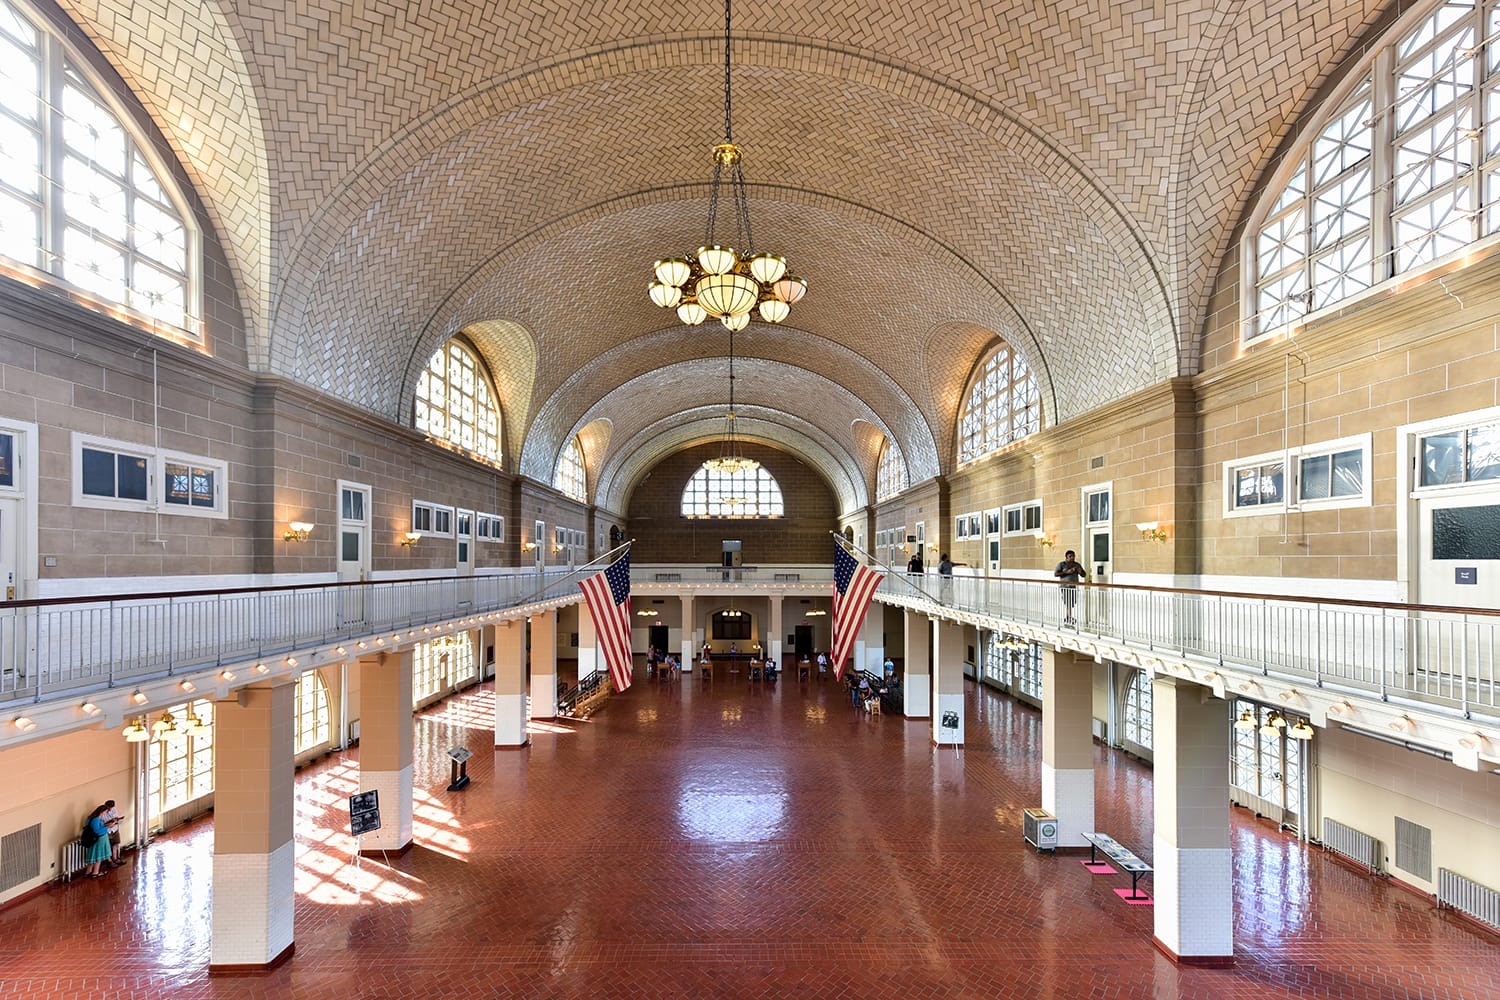 Το Registry Room ή "Great Hall" στο Εθνικό Πάρκο Ellis Island στη Νέα Υόρκη